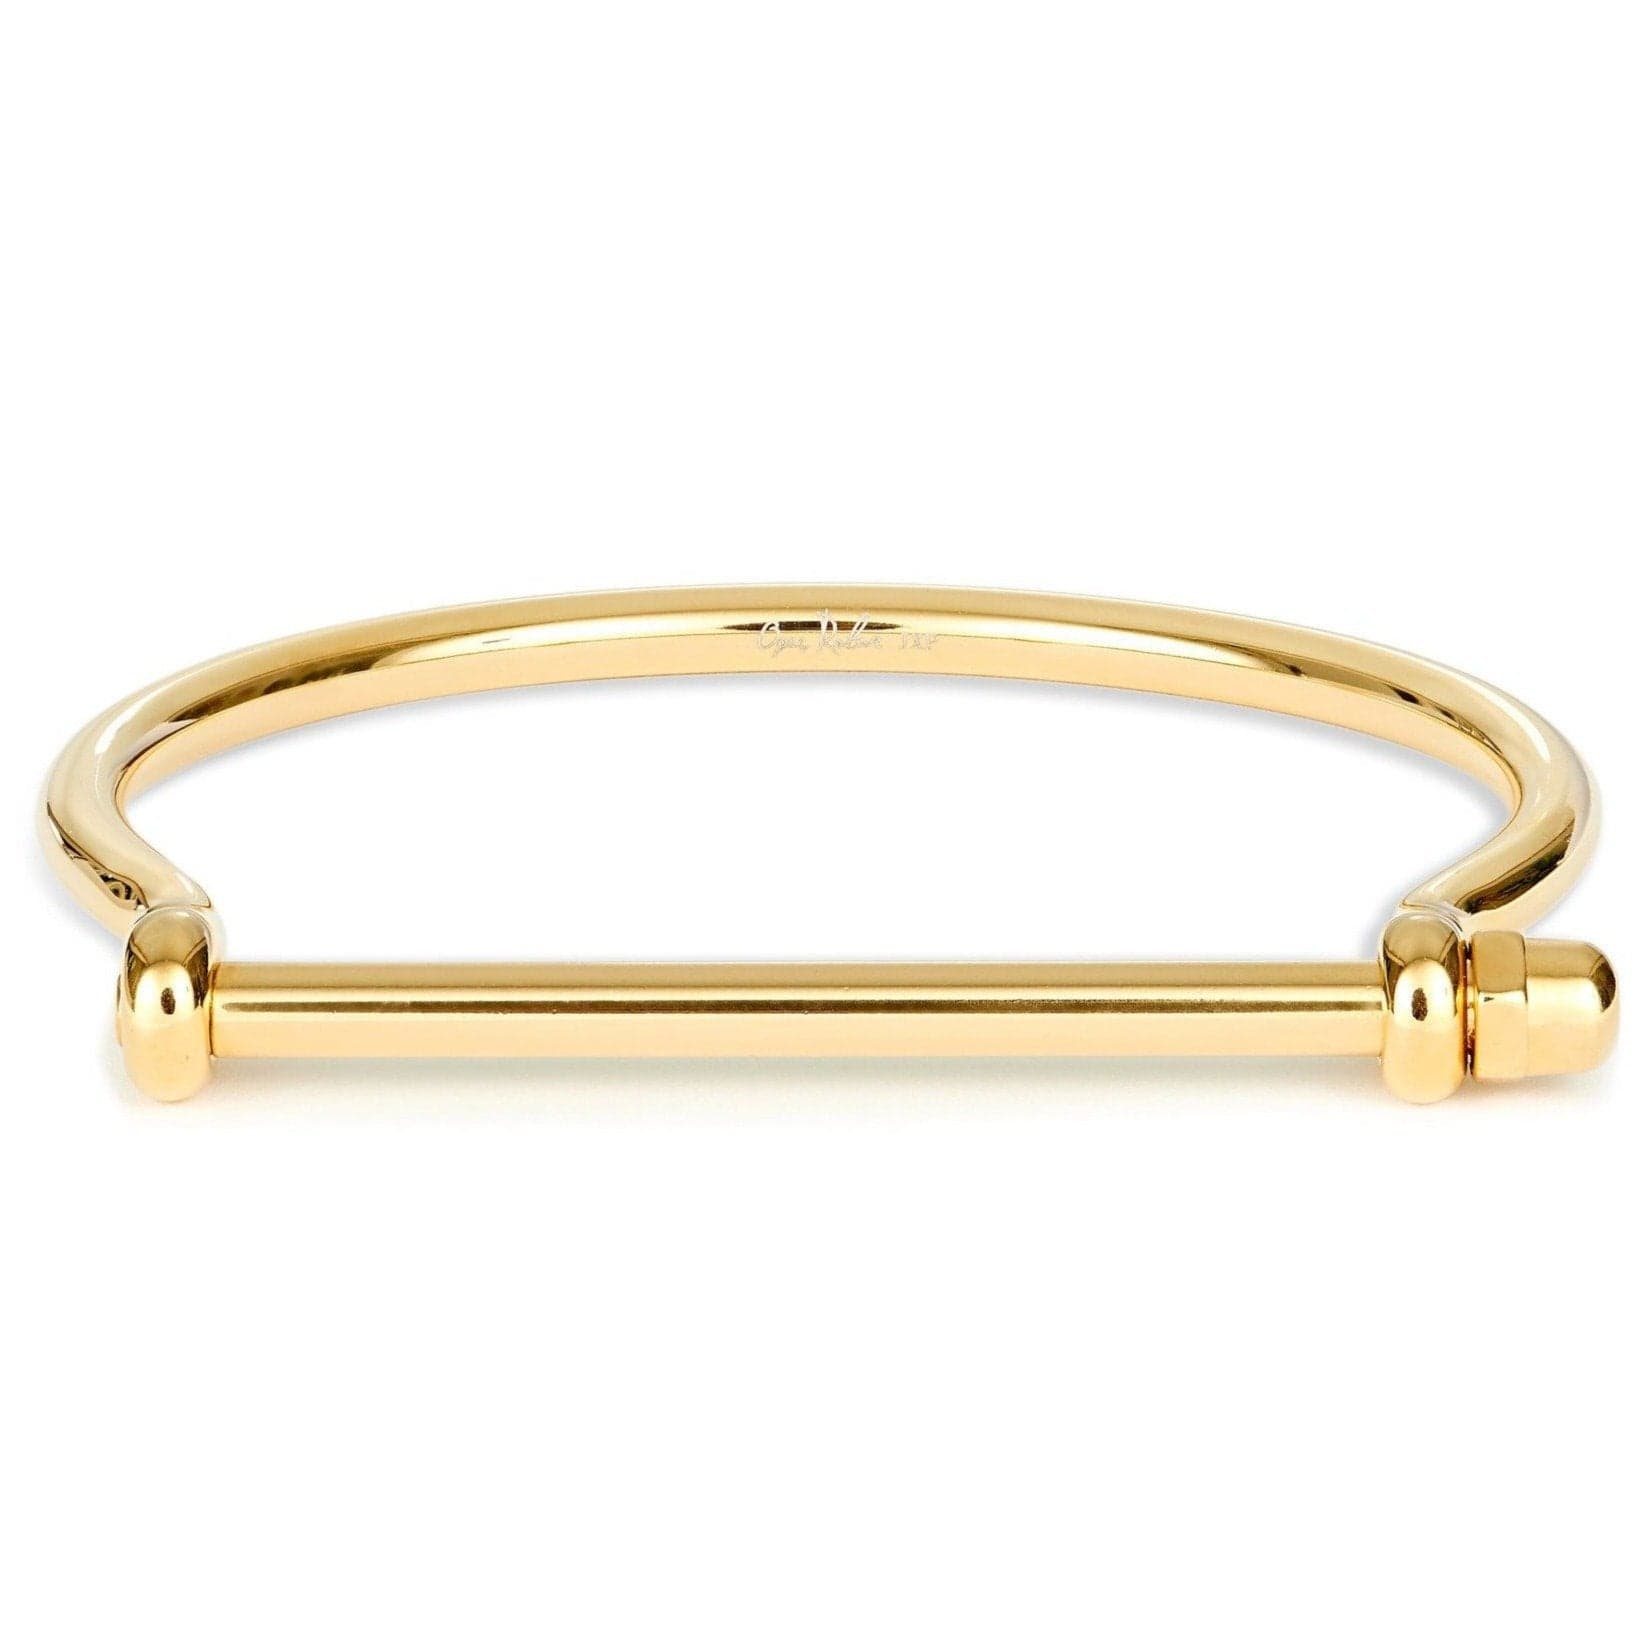 Opes Robur bracelet GOLD BEST SELLERS BUNDLE